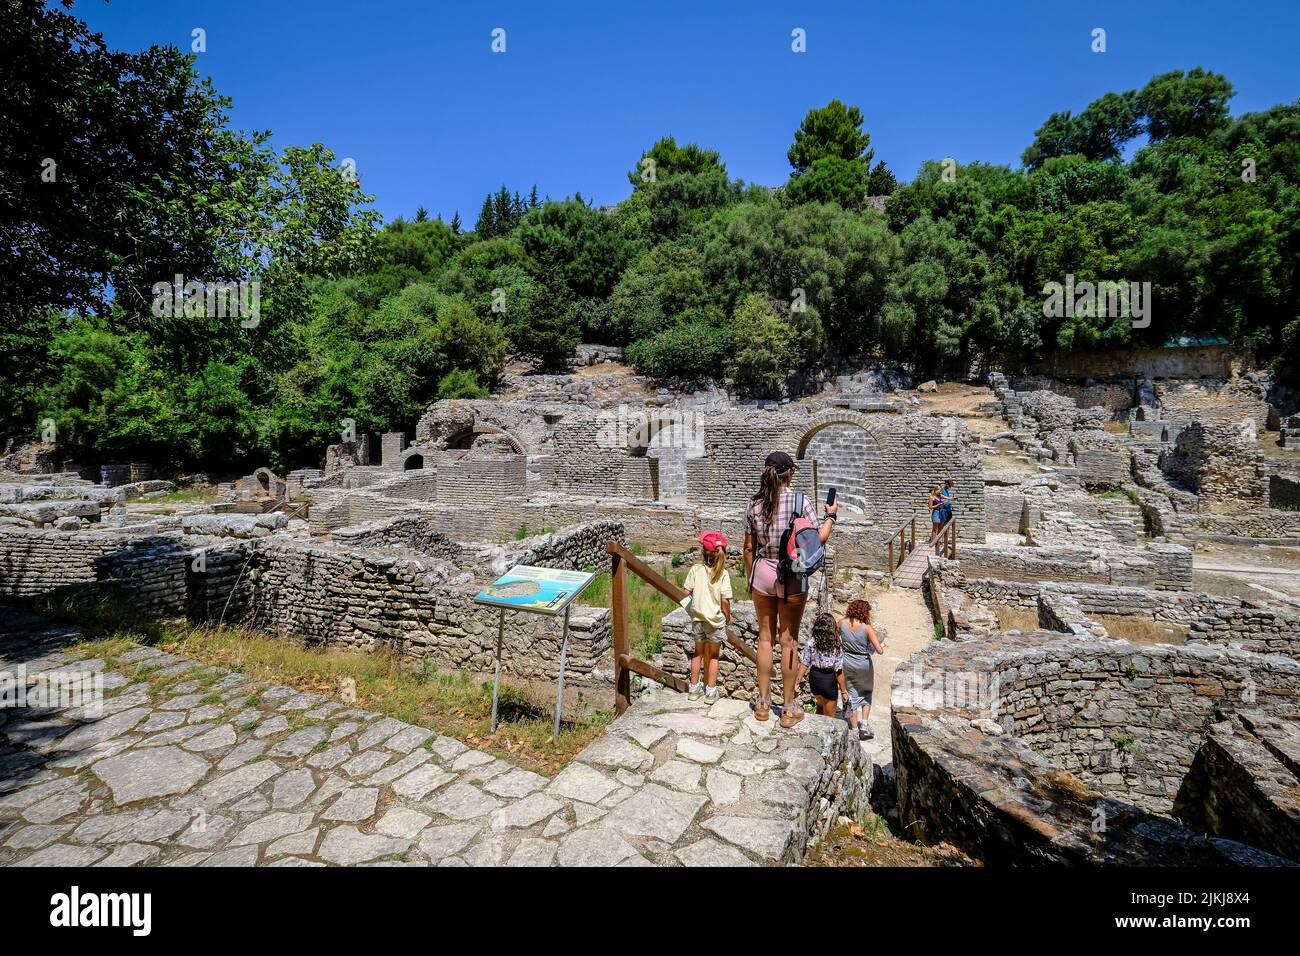 Butrint, Ksamil, Albanien - Touristen besuchen das Amphitheater im alten Butrint, Tempel des Asklepios und Theater, Weltkulturerbe zerstörte Stadt Butrint. Stockfoto